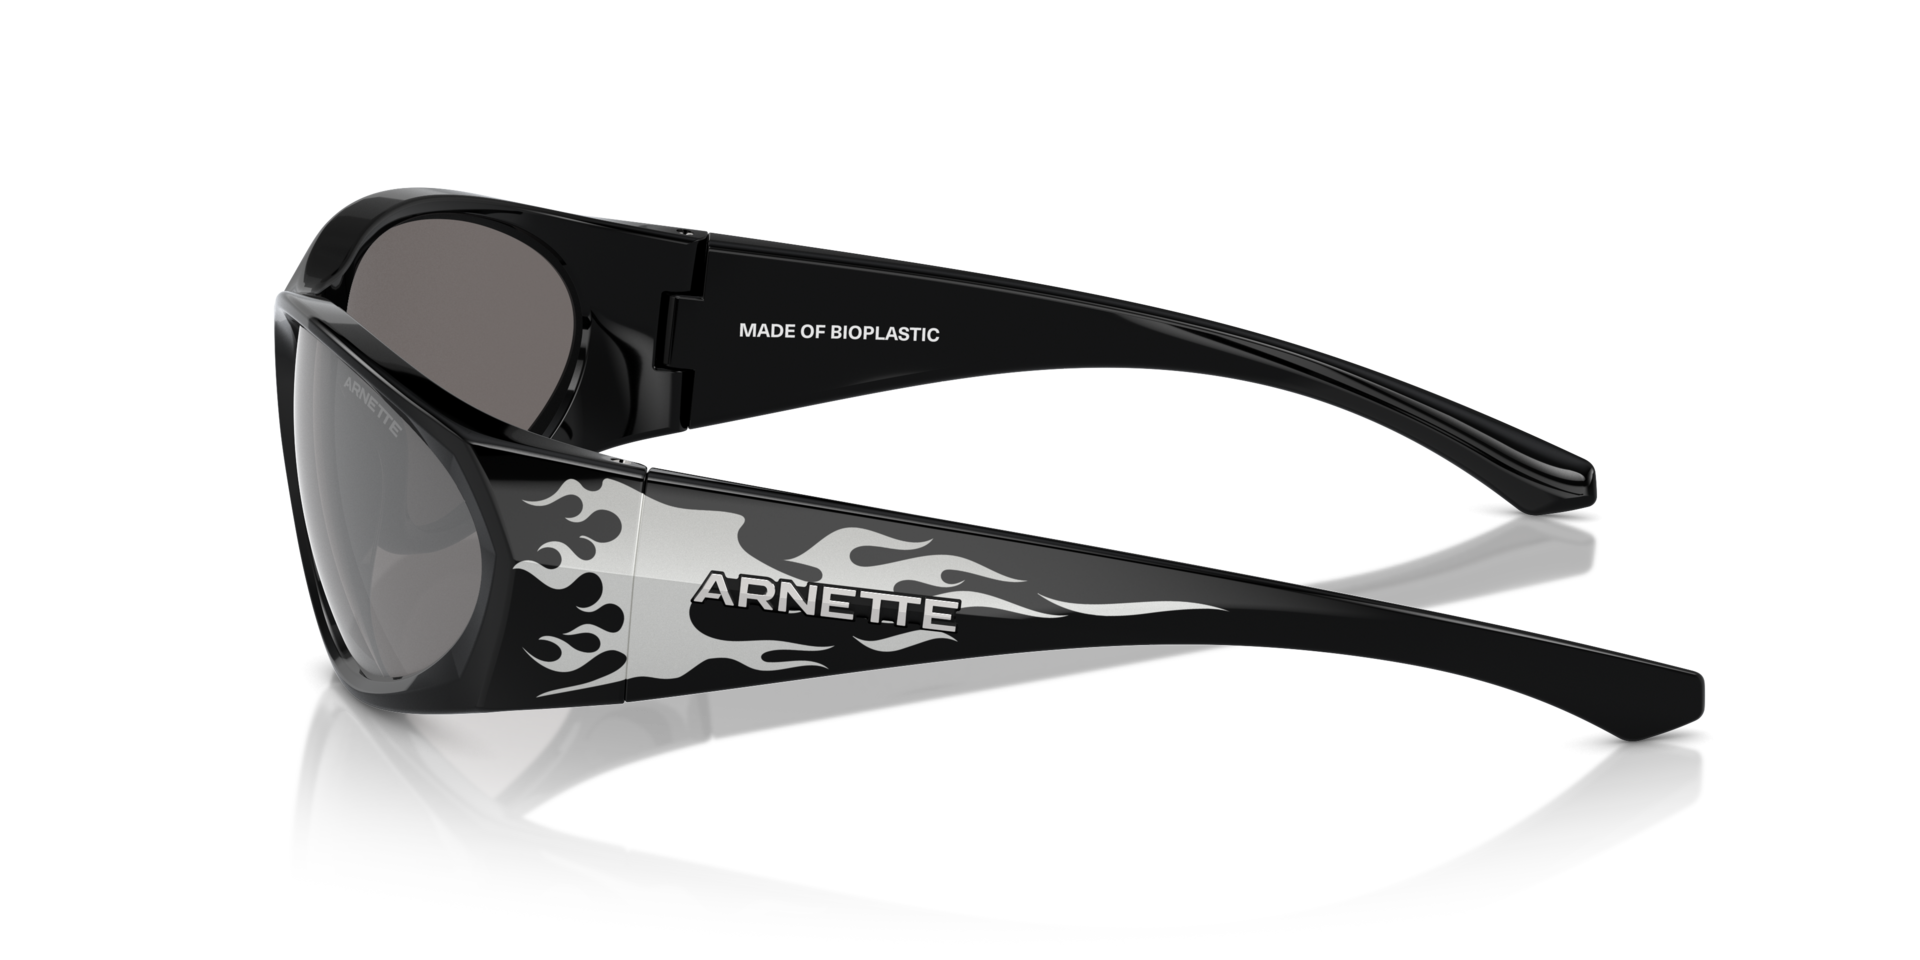 Das Bild zeigt die Sonnenbrille AN4342 29606G von der Marke Arnette in schwarz.